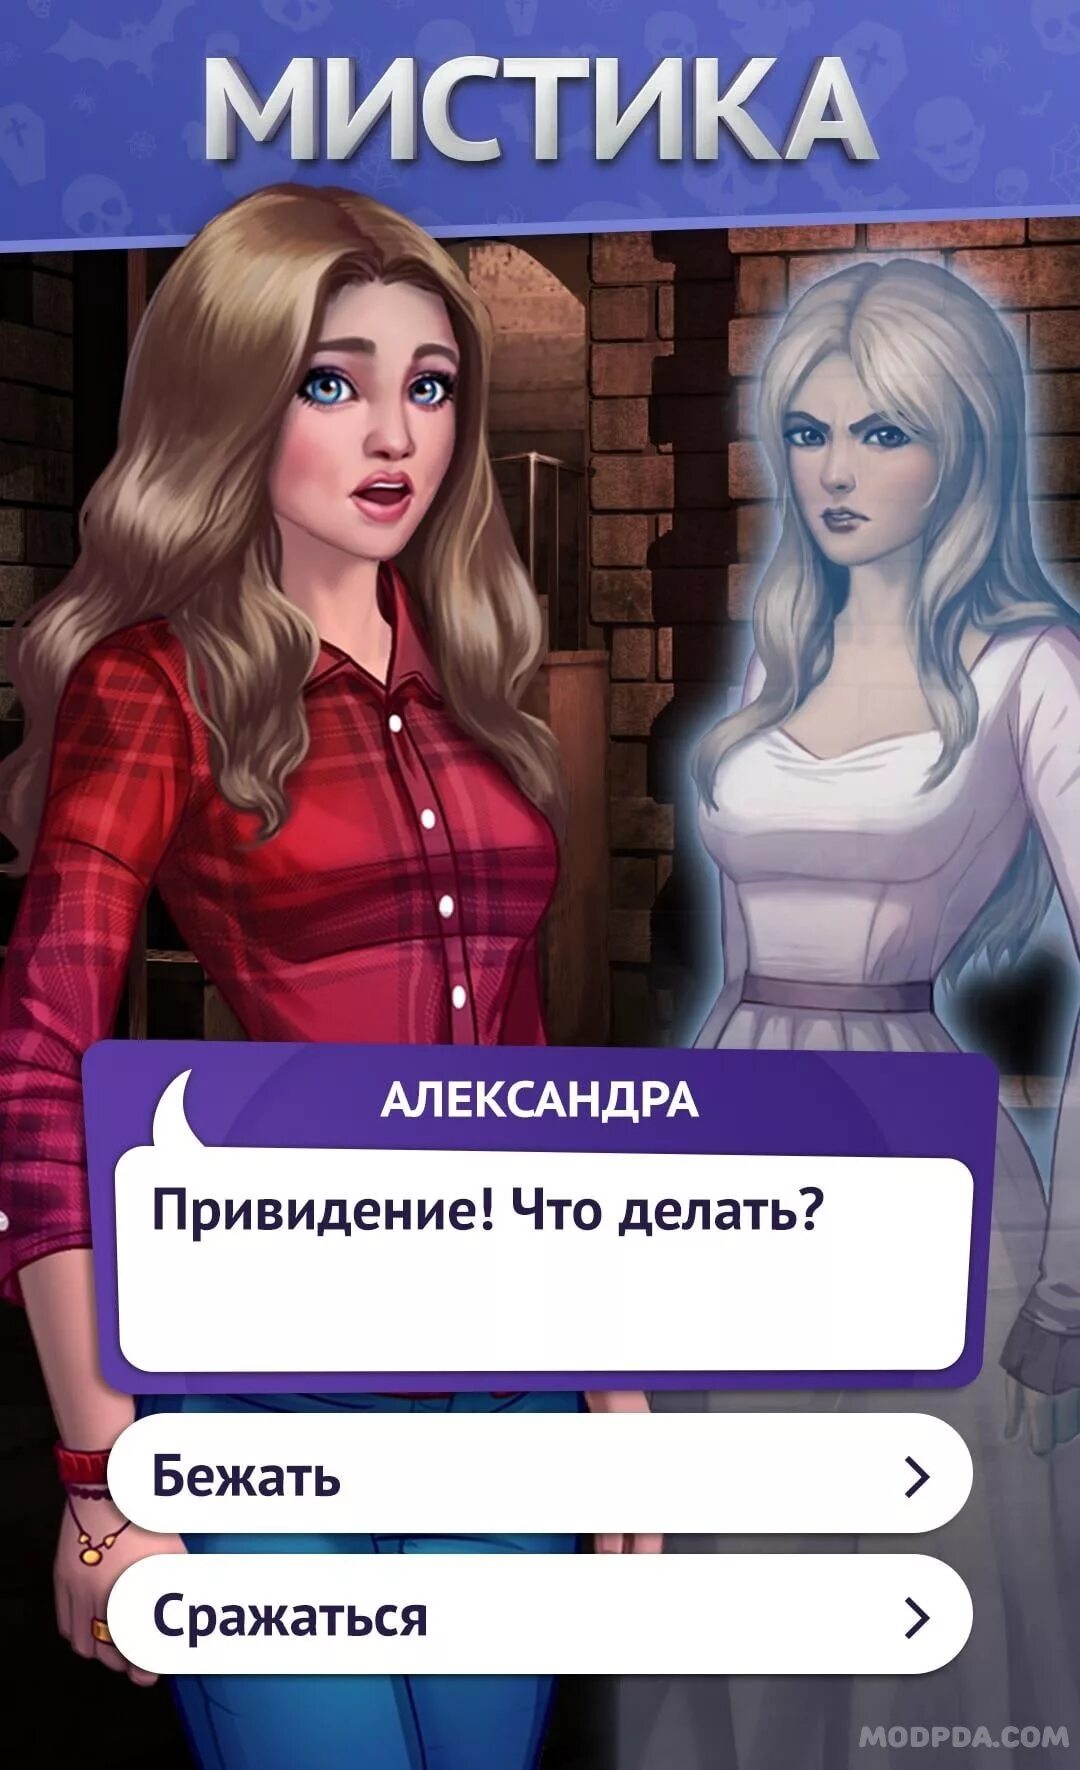 Визуальные игры на андроид на русском